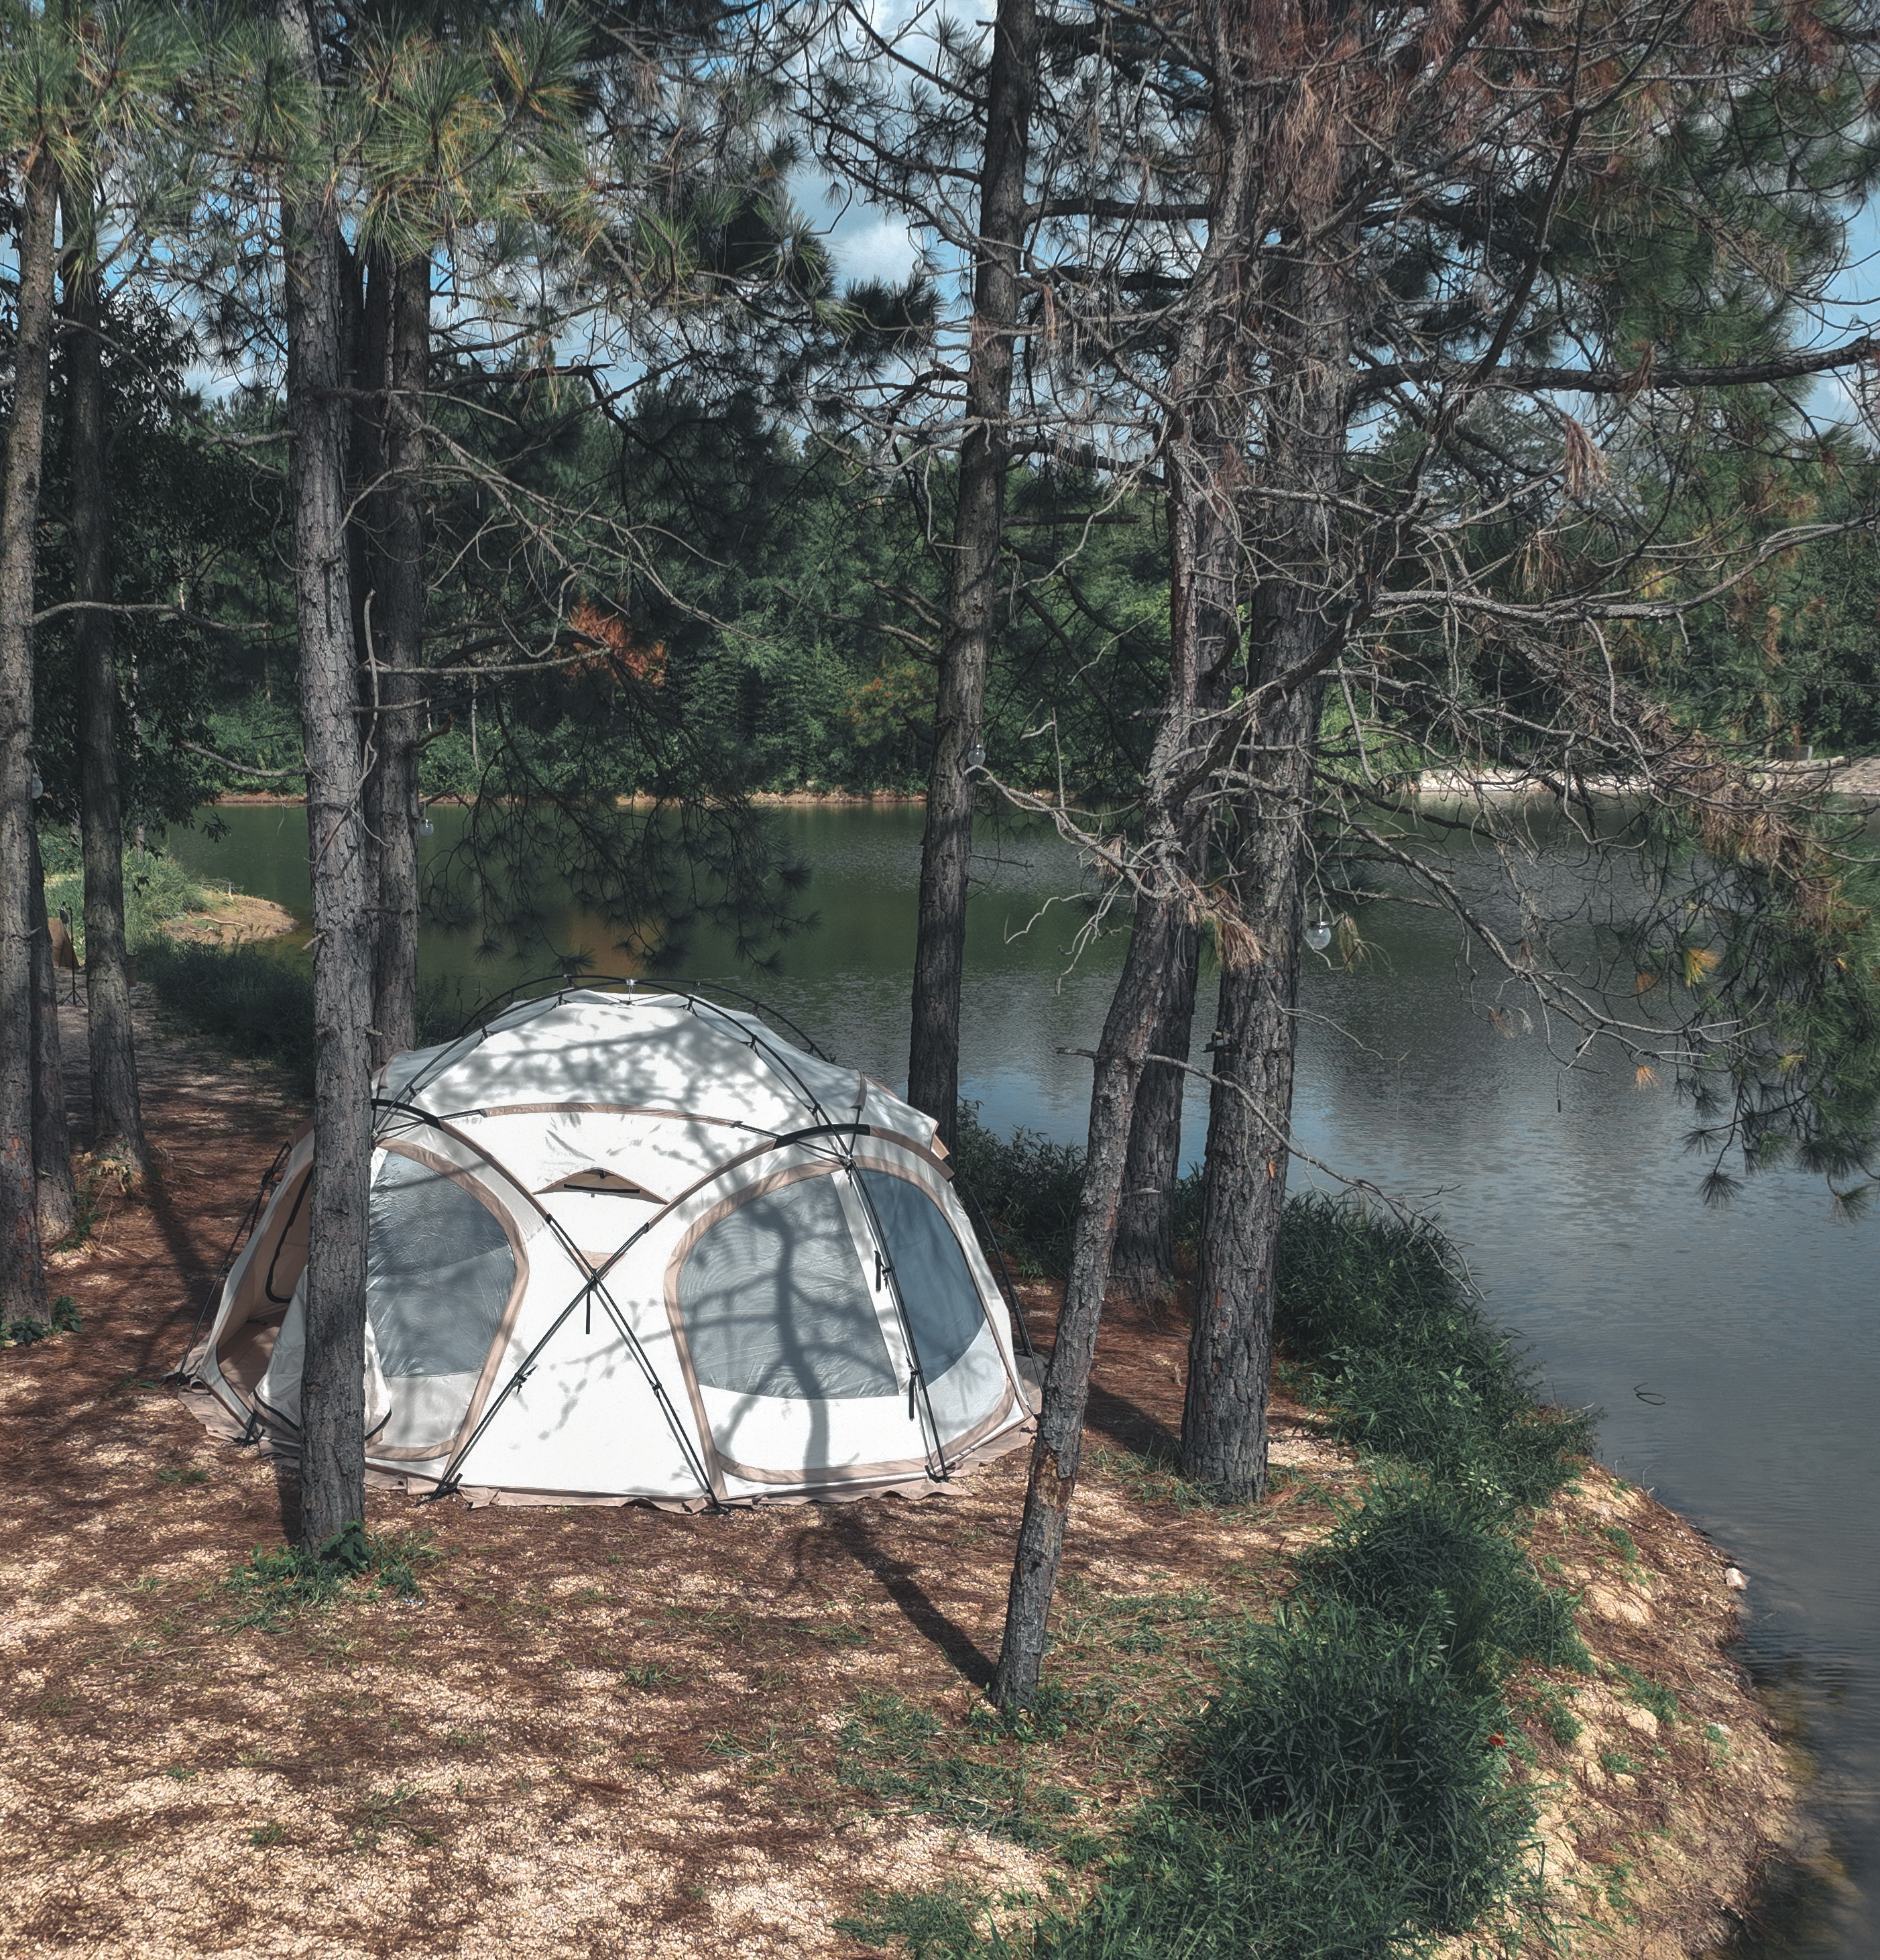 Soomloom テント 超大型 ドームテント Marshmallow ビッグサイズ ボール型 アウトドアキャンピン フルクローズ グラウンドシート ポール ペグ ロープ 収納バッグ付き 大型テント 災害 防災 テント ドーム型